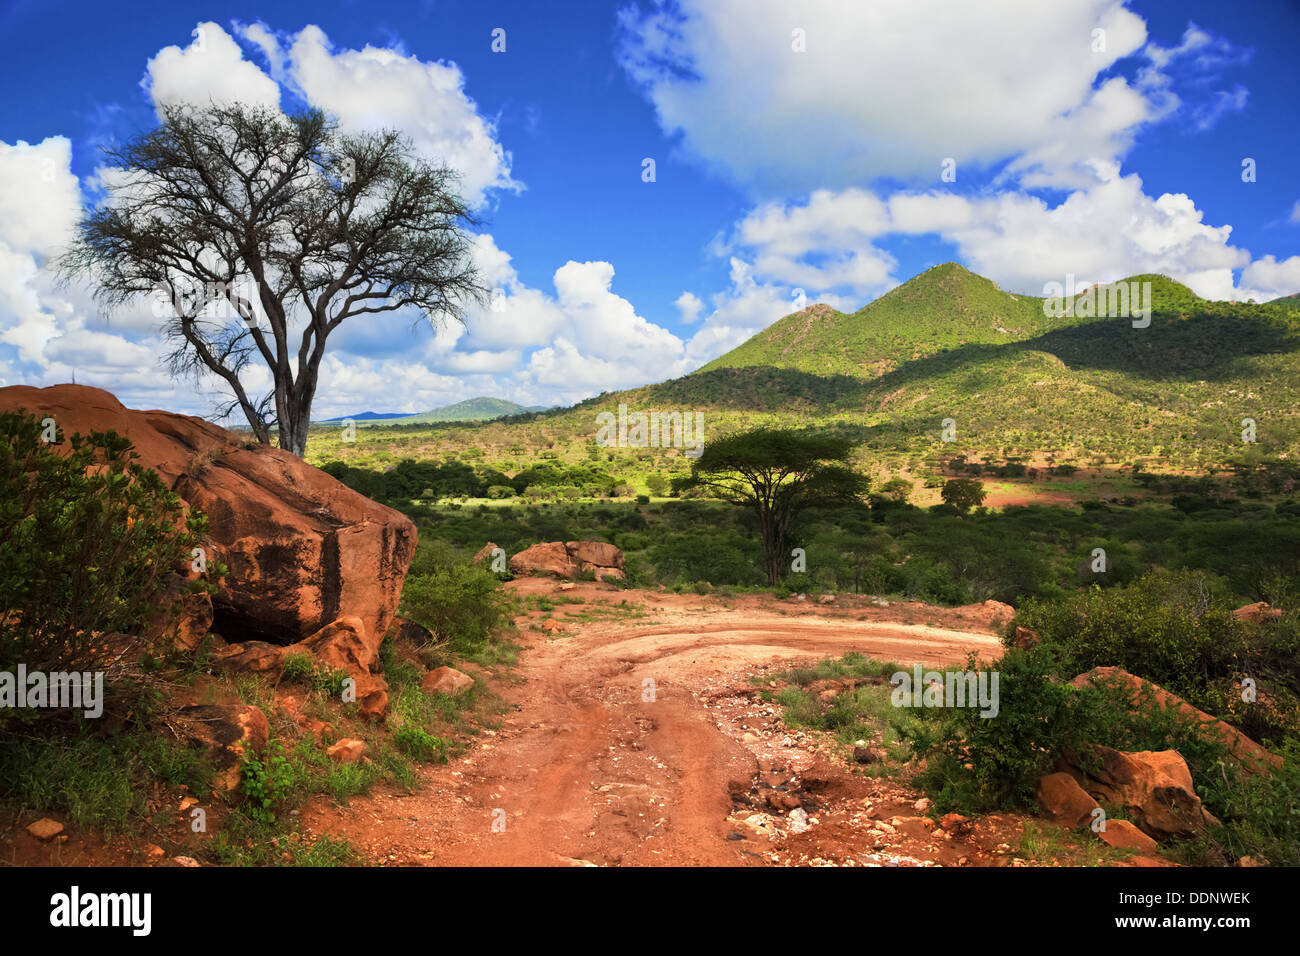 Rot, unbefestigte Straße und Bush mit Savanne Landschaft in Afrika. Tsavo West, Kenia. Stockfoto